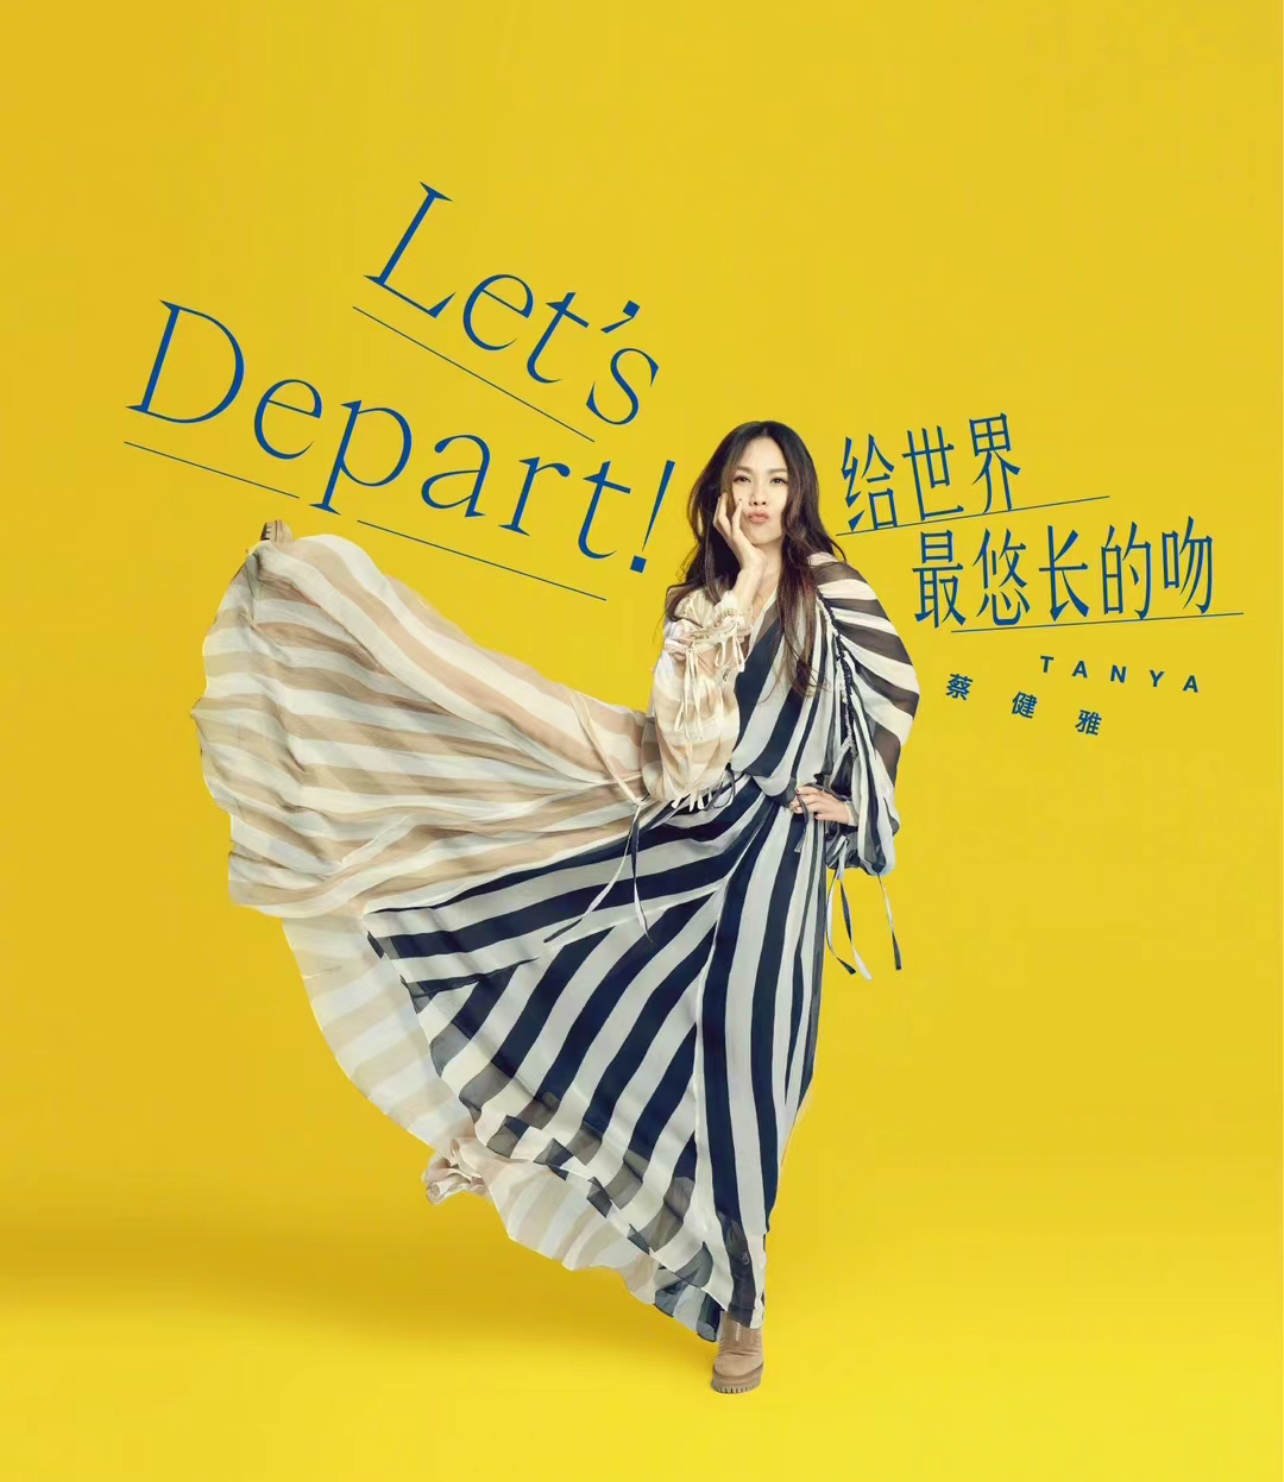 [上海]蔡健雅“Let’s Depart！ 给世界最悠长的吻”巡回演唱会-上海站